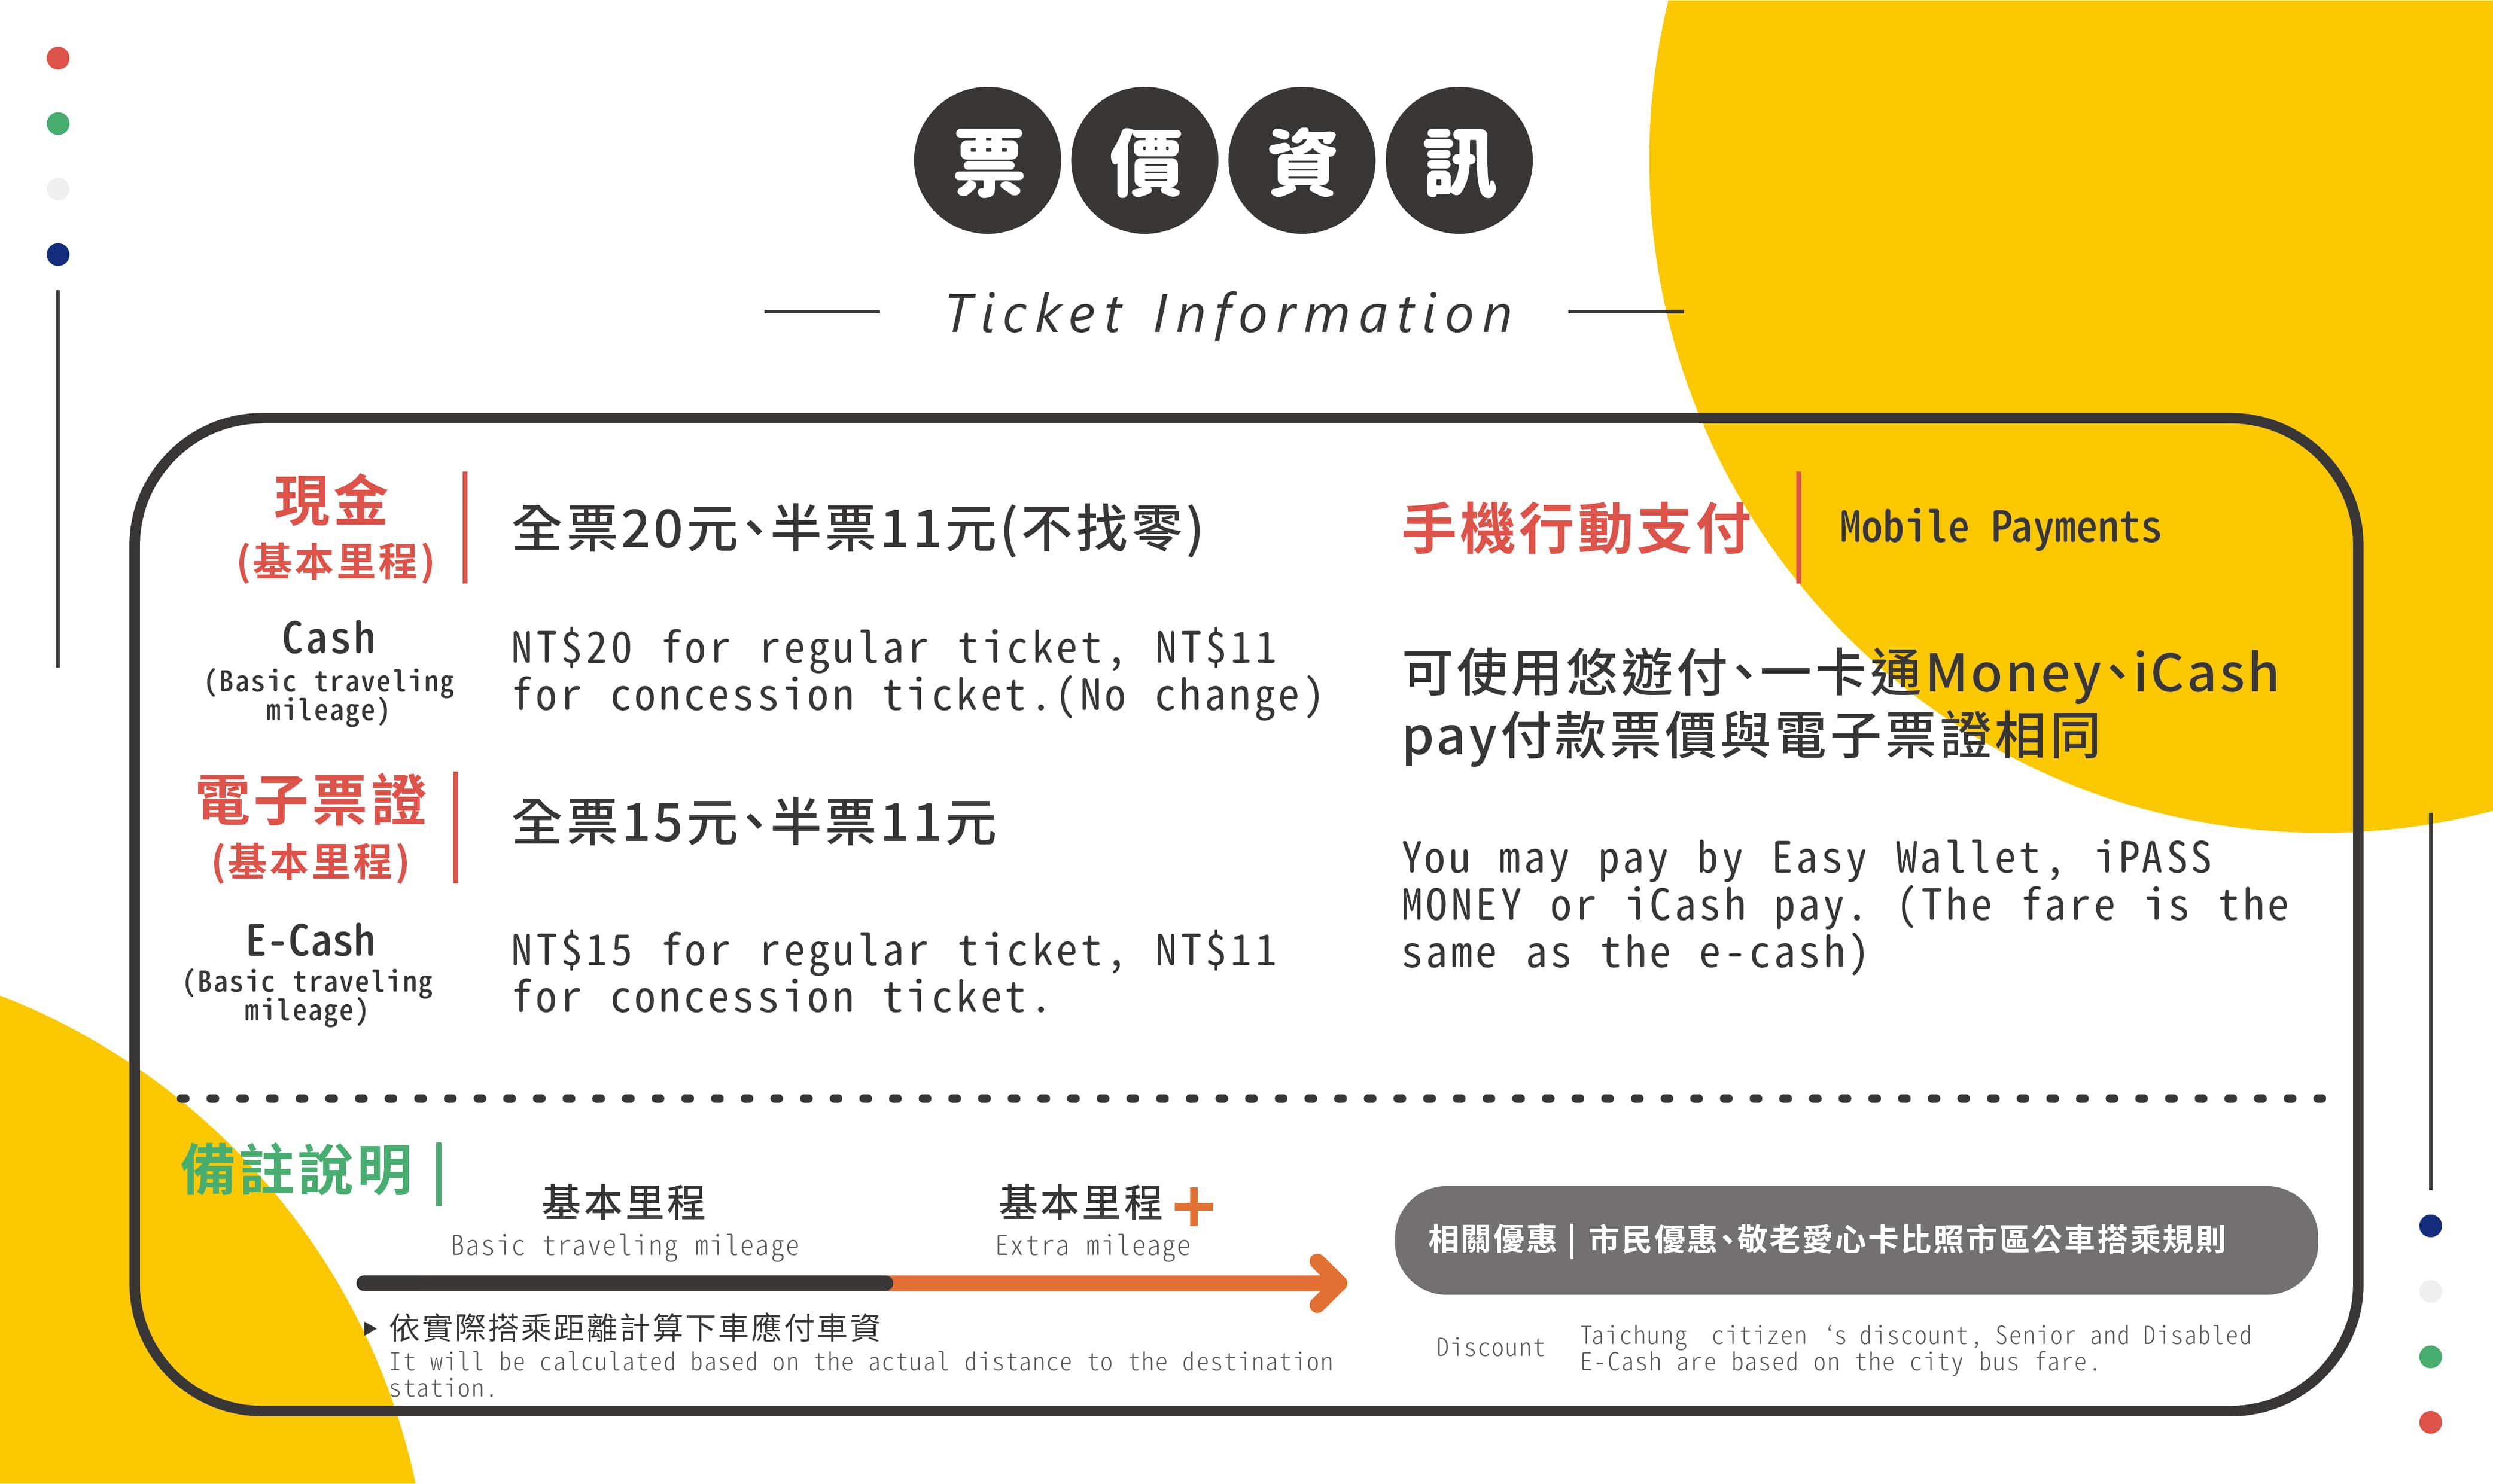 Ticket information